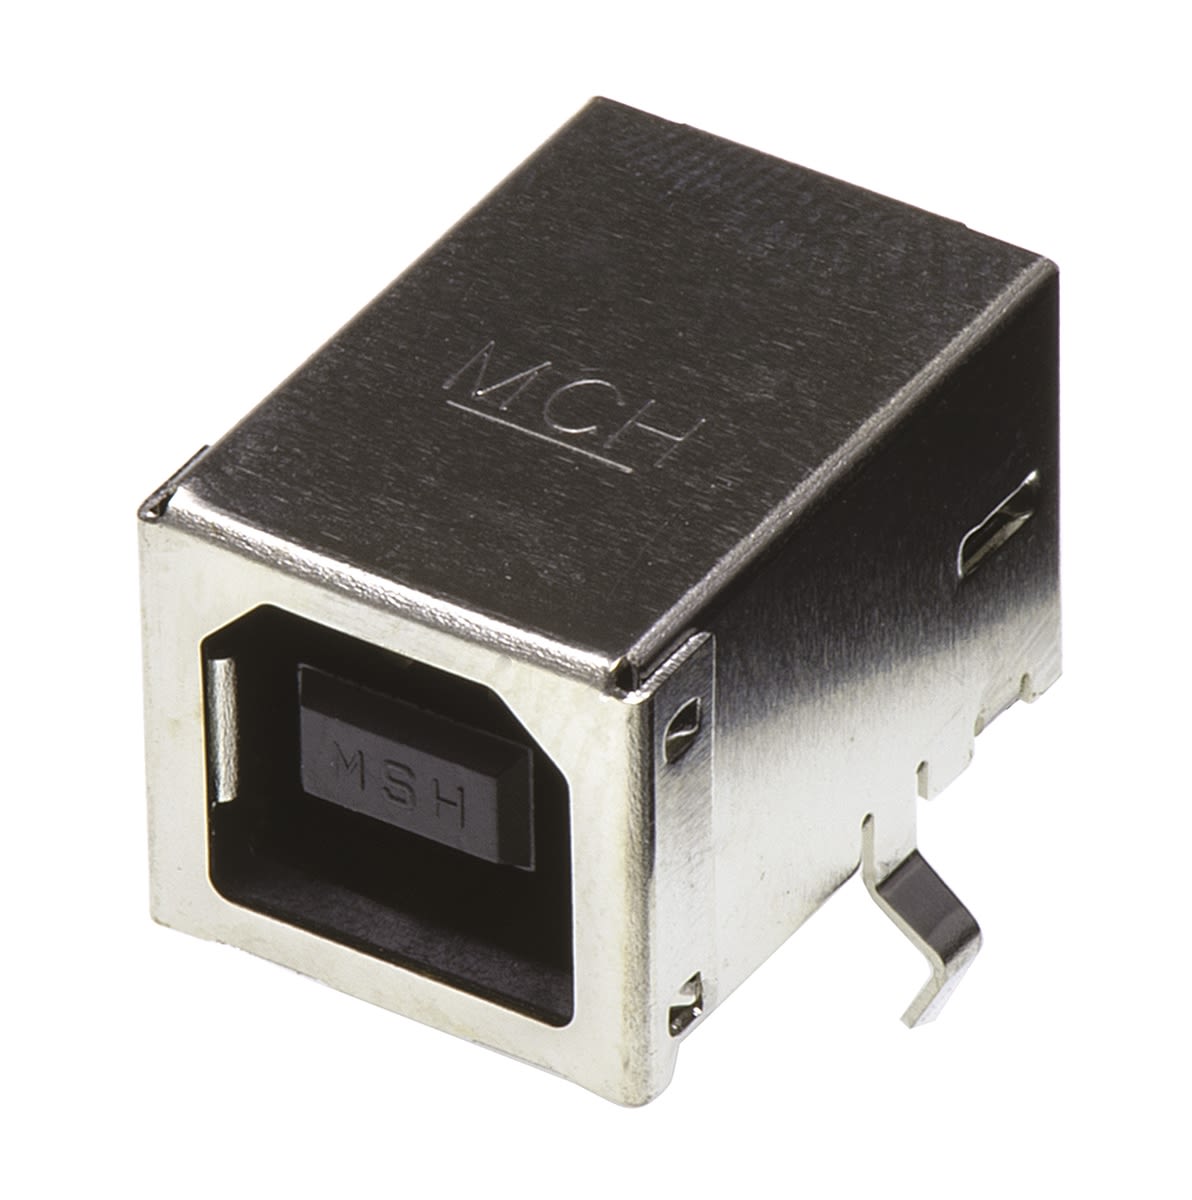 Conector USB Molex 67068-7041, Hembra, , 1 puerto puertos, Ángulo de 90° , Orificio Pasante, 30,0 V., 1.5A 67068